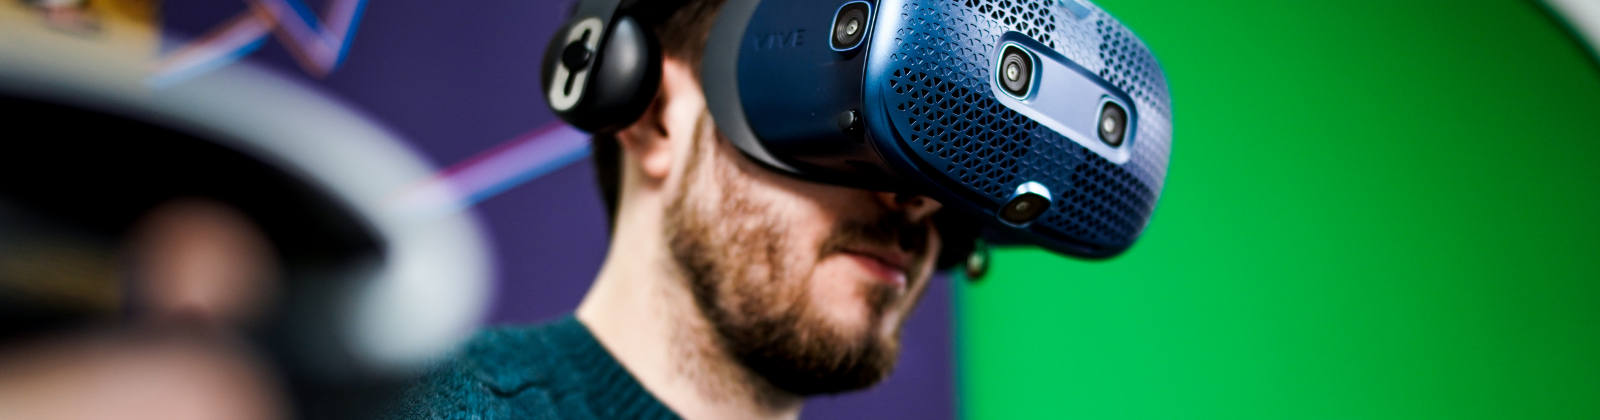 Curso Realidad Virtual y Aumentada con Unity 3D